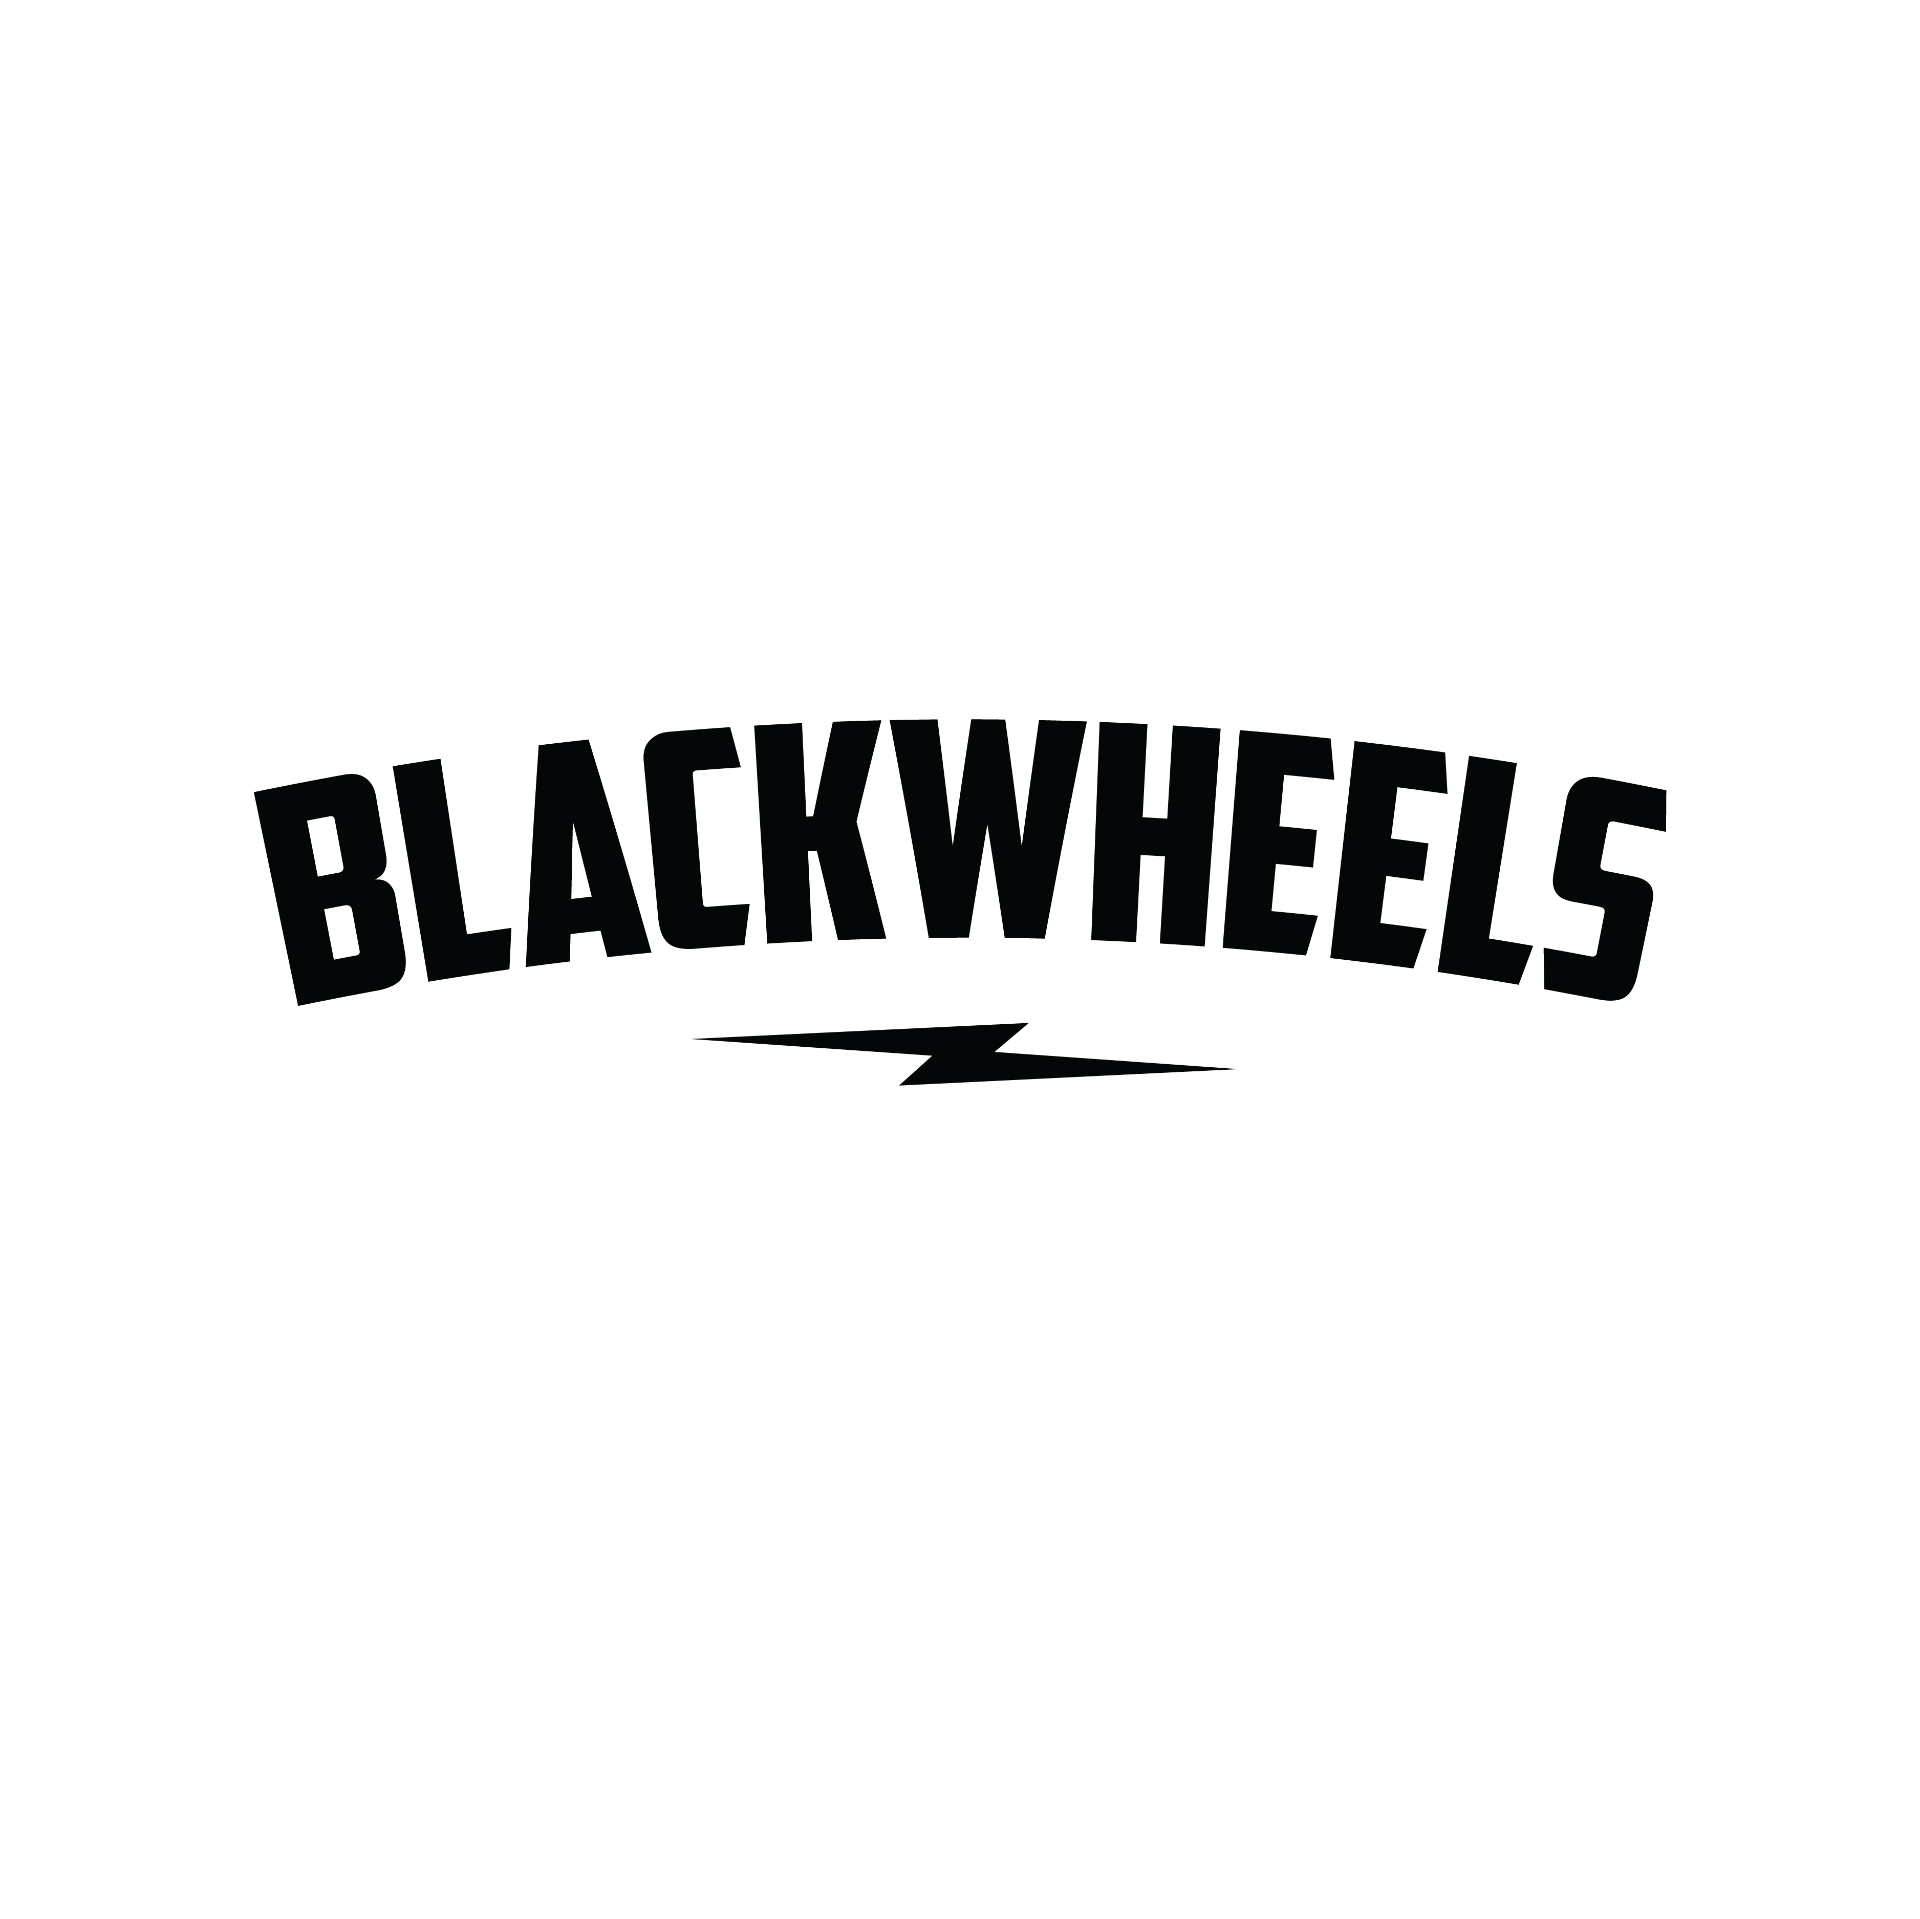 BLACKWHEELS